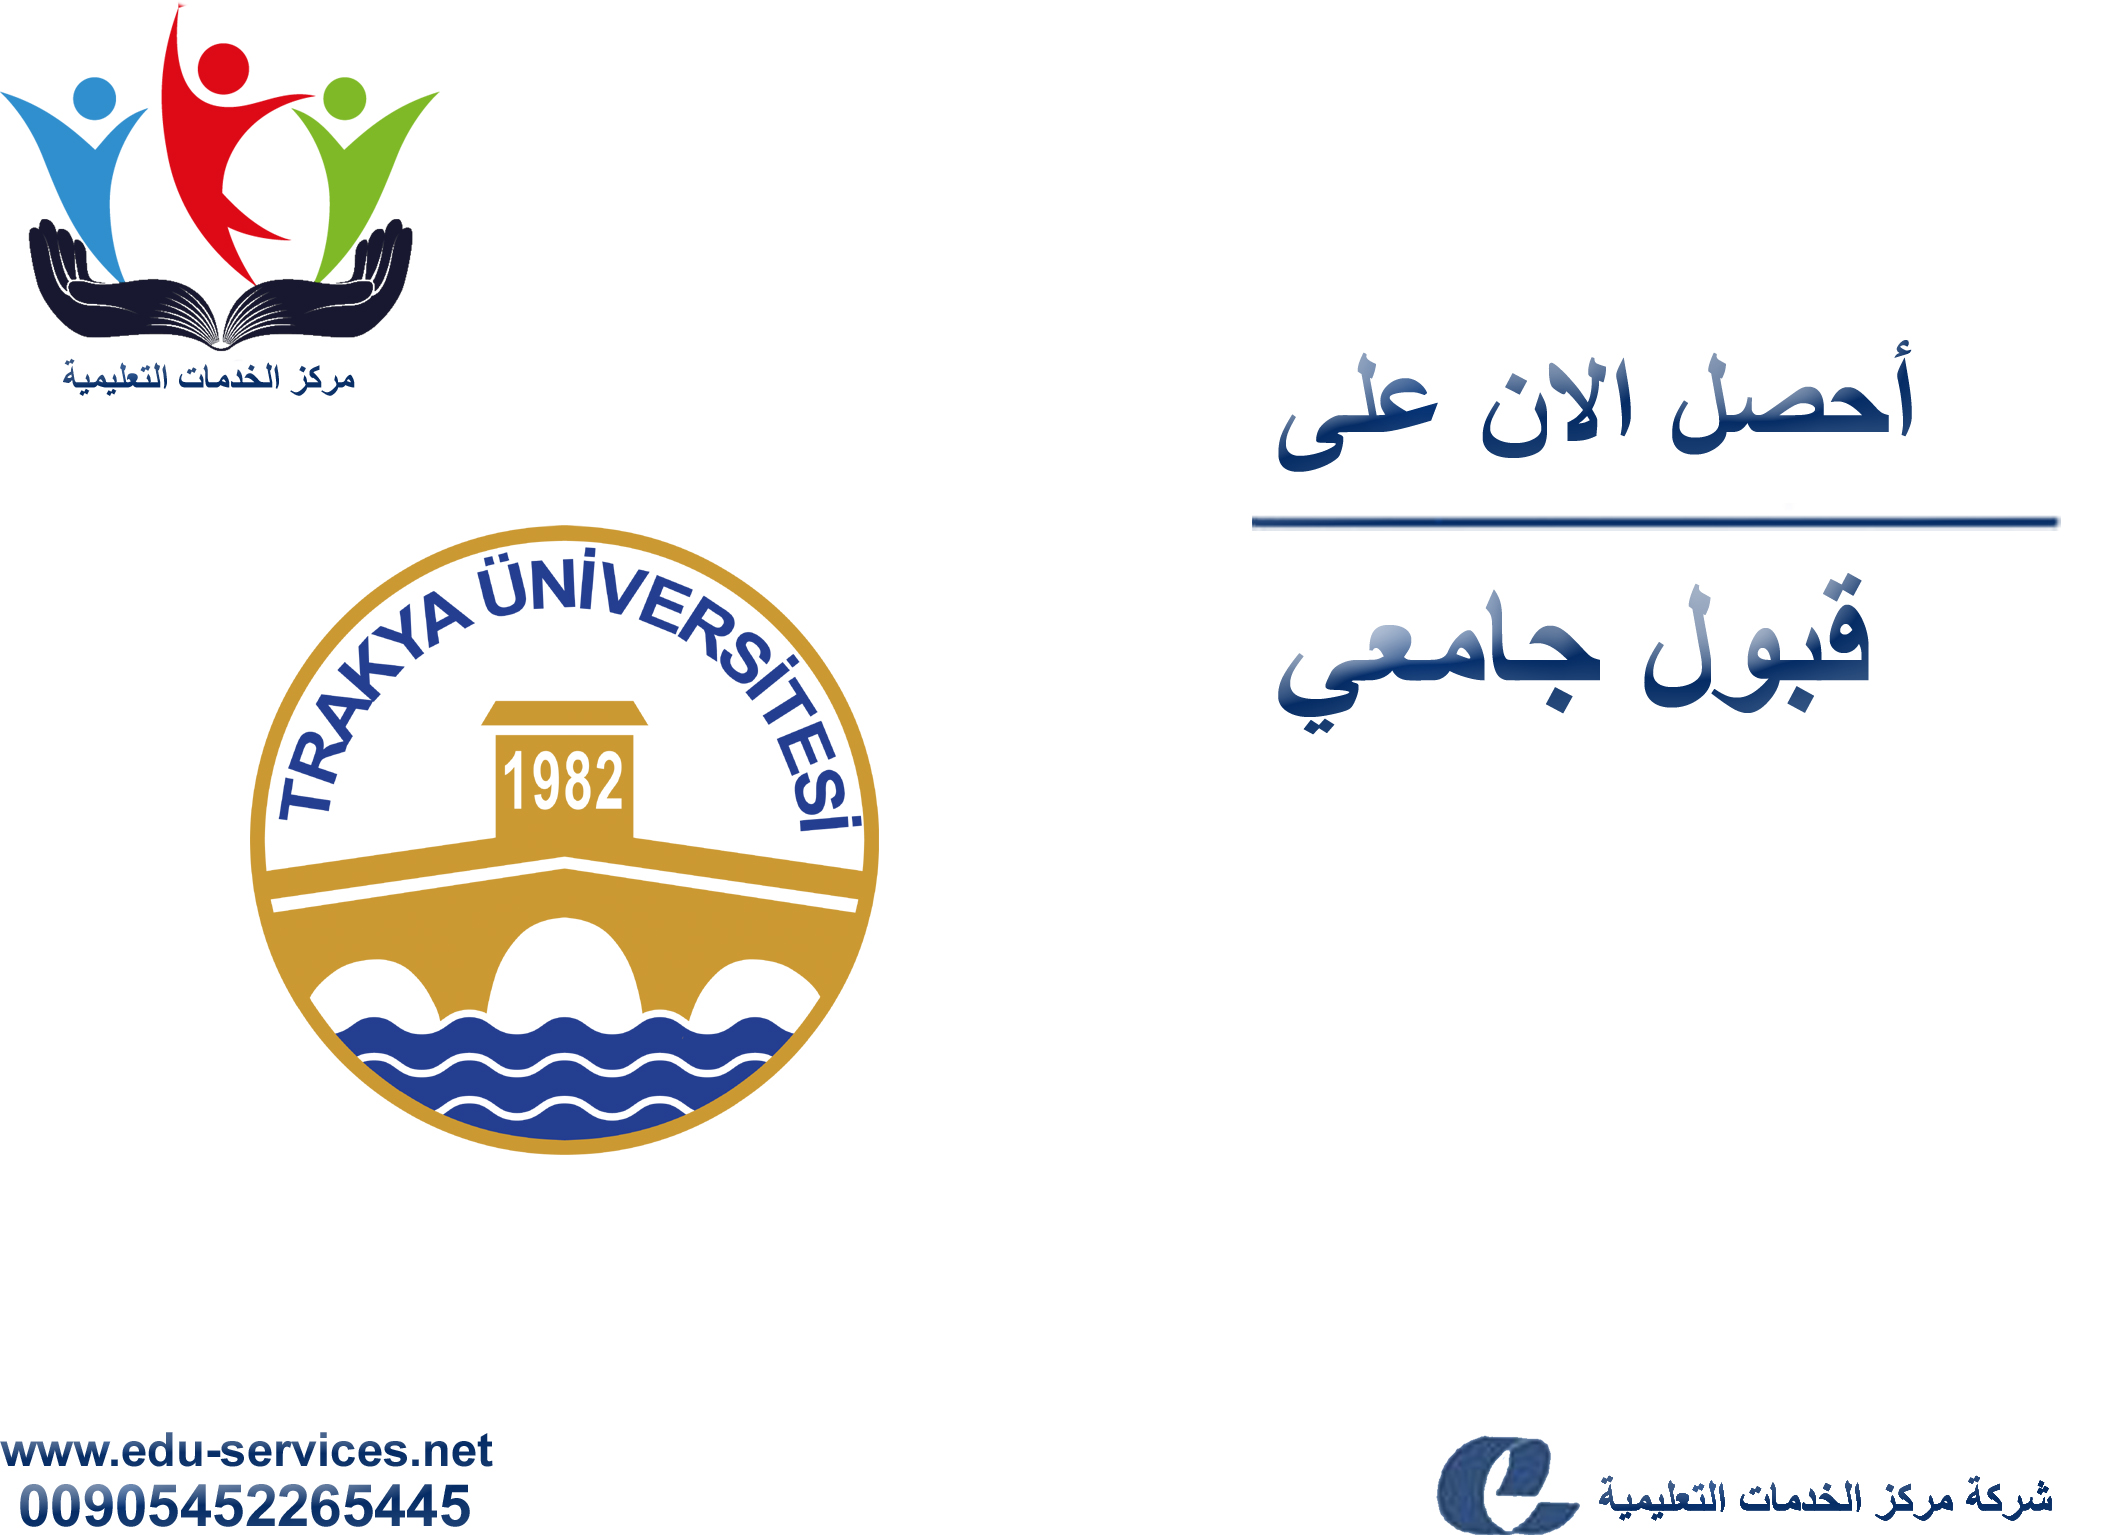 افتتاح التسجيل في جامعة تراكيا للعام 2017-2018